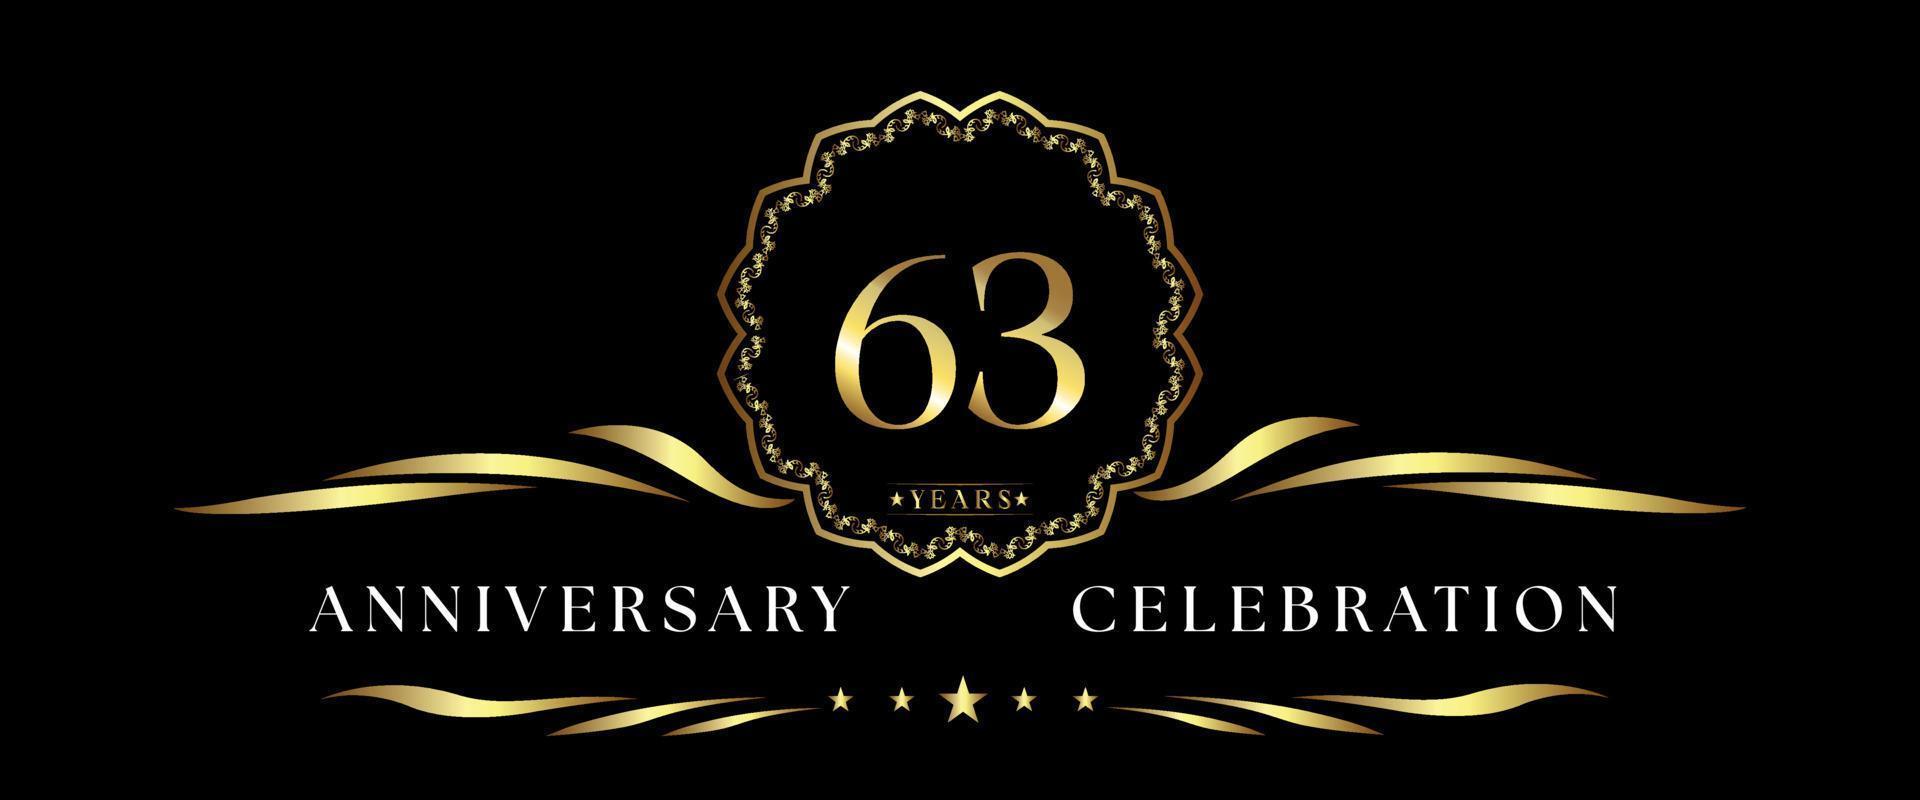 Celebração de aniversário de 63 anos com moldura decorativa dourada isolada em fundo preto. design vetorial para cartão de felicitações, festa de aniversário, casamento, festa de evento, cerimônia. logotipo de aniversário de 63 anos. vetor